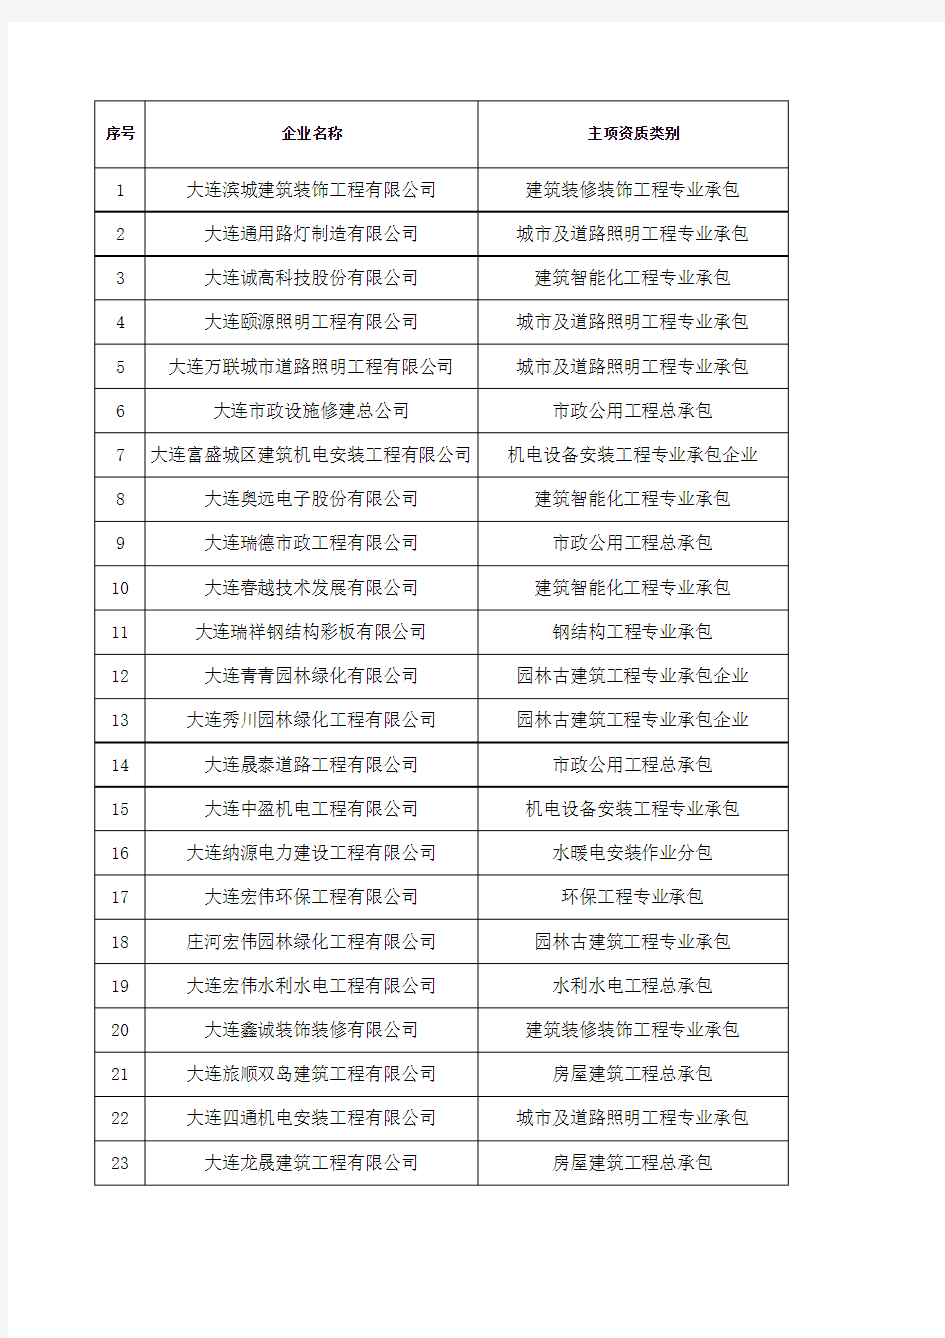 大连市2013年第一批《辽宁省施工企业规费计取标准》名单